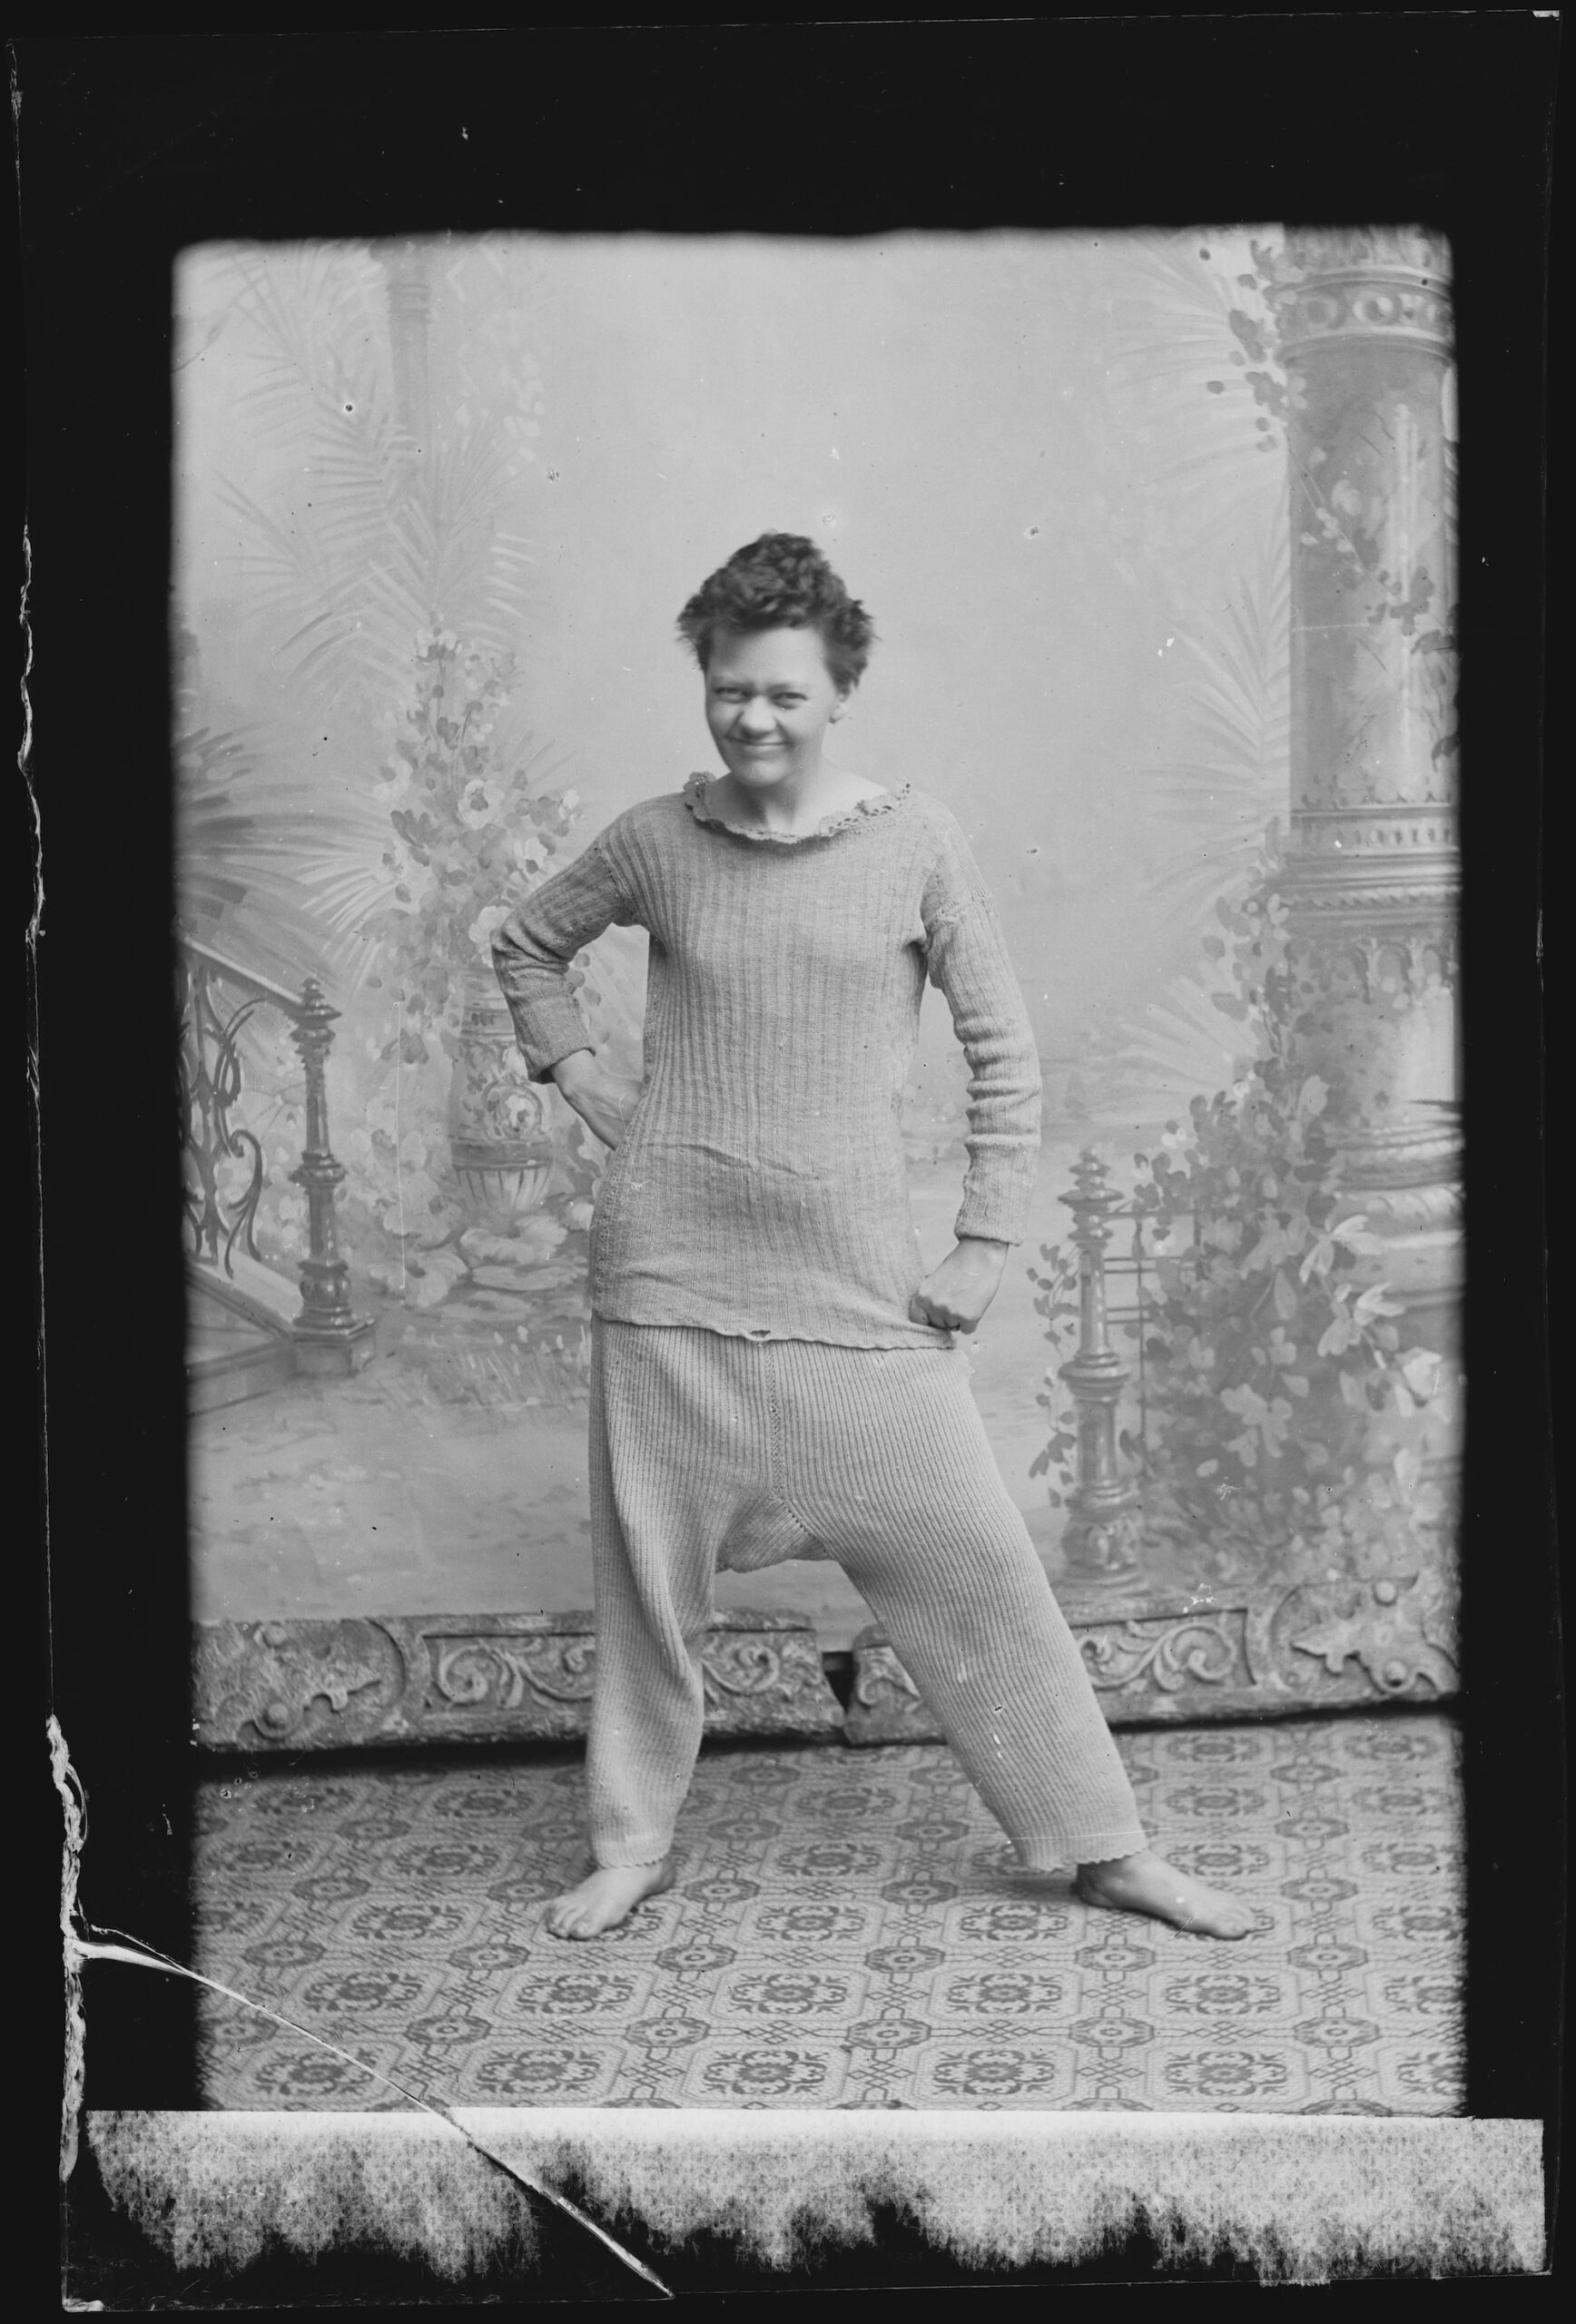 Marie Høeg mustavalkokuvassa vanhassa valokuvastudiossa maisemakankaan edessä. Hänellä on yllään pyjamalta näyttävä vaate ja hänen ilmeensä on vitsikäs.